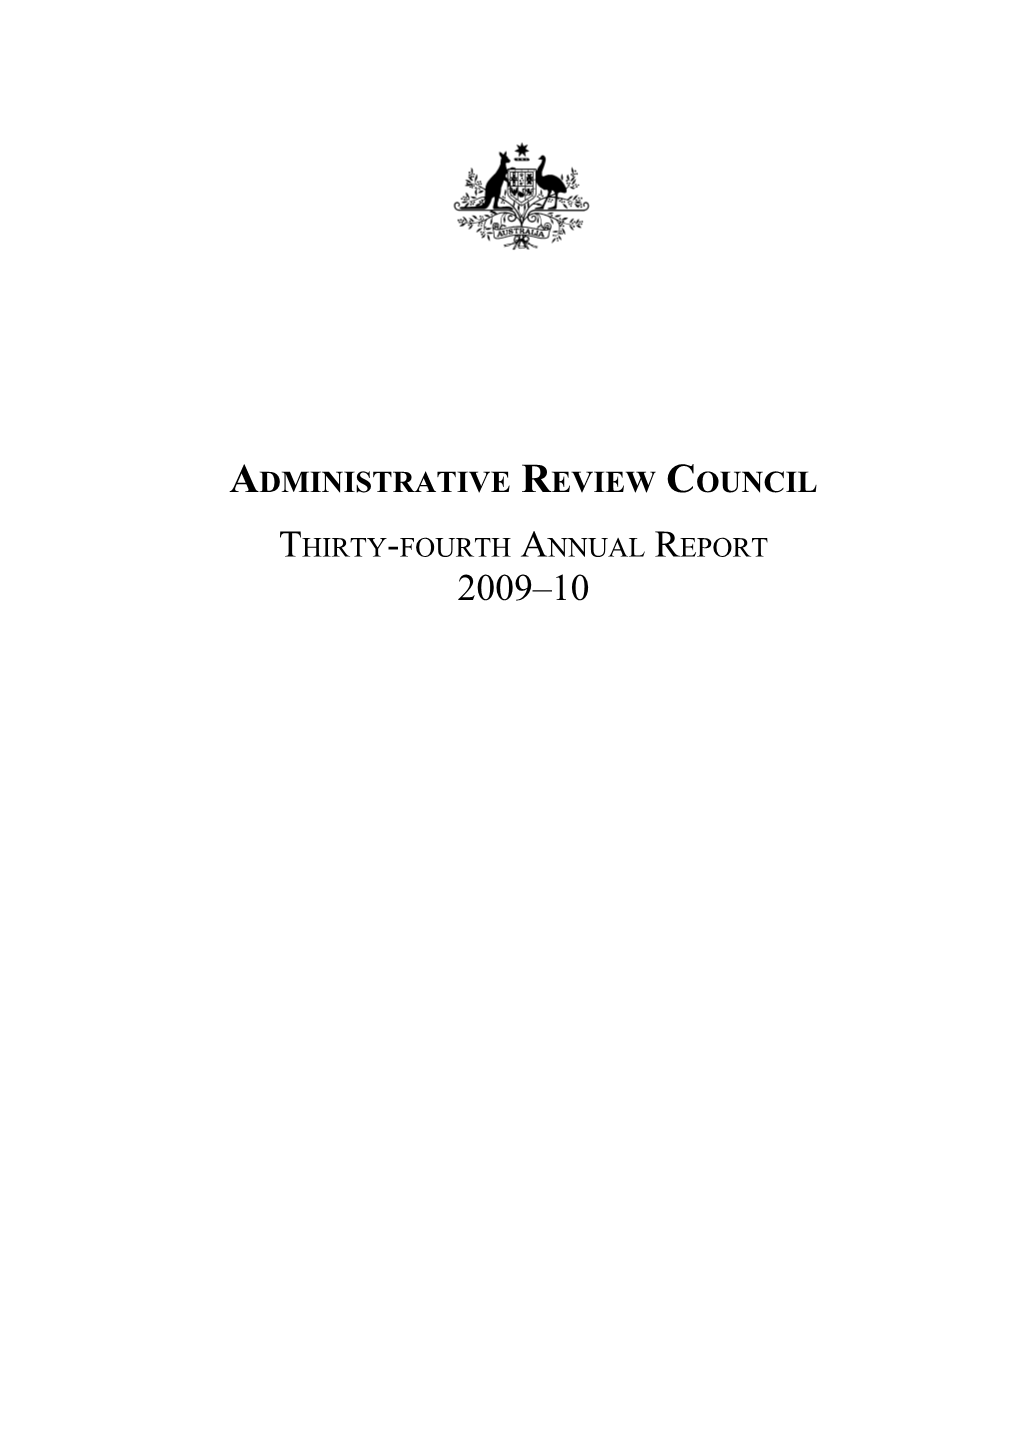 ARC Annual Report 09-10